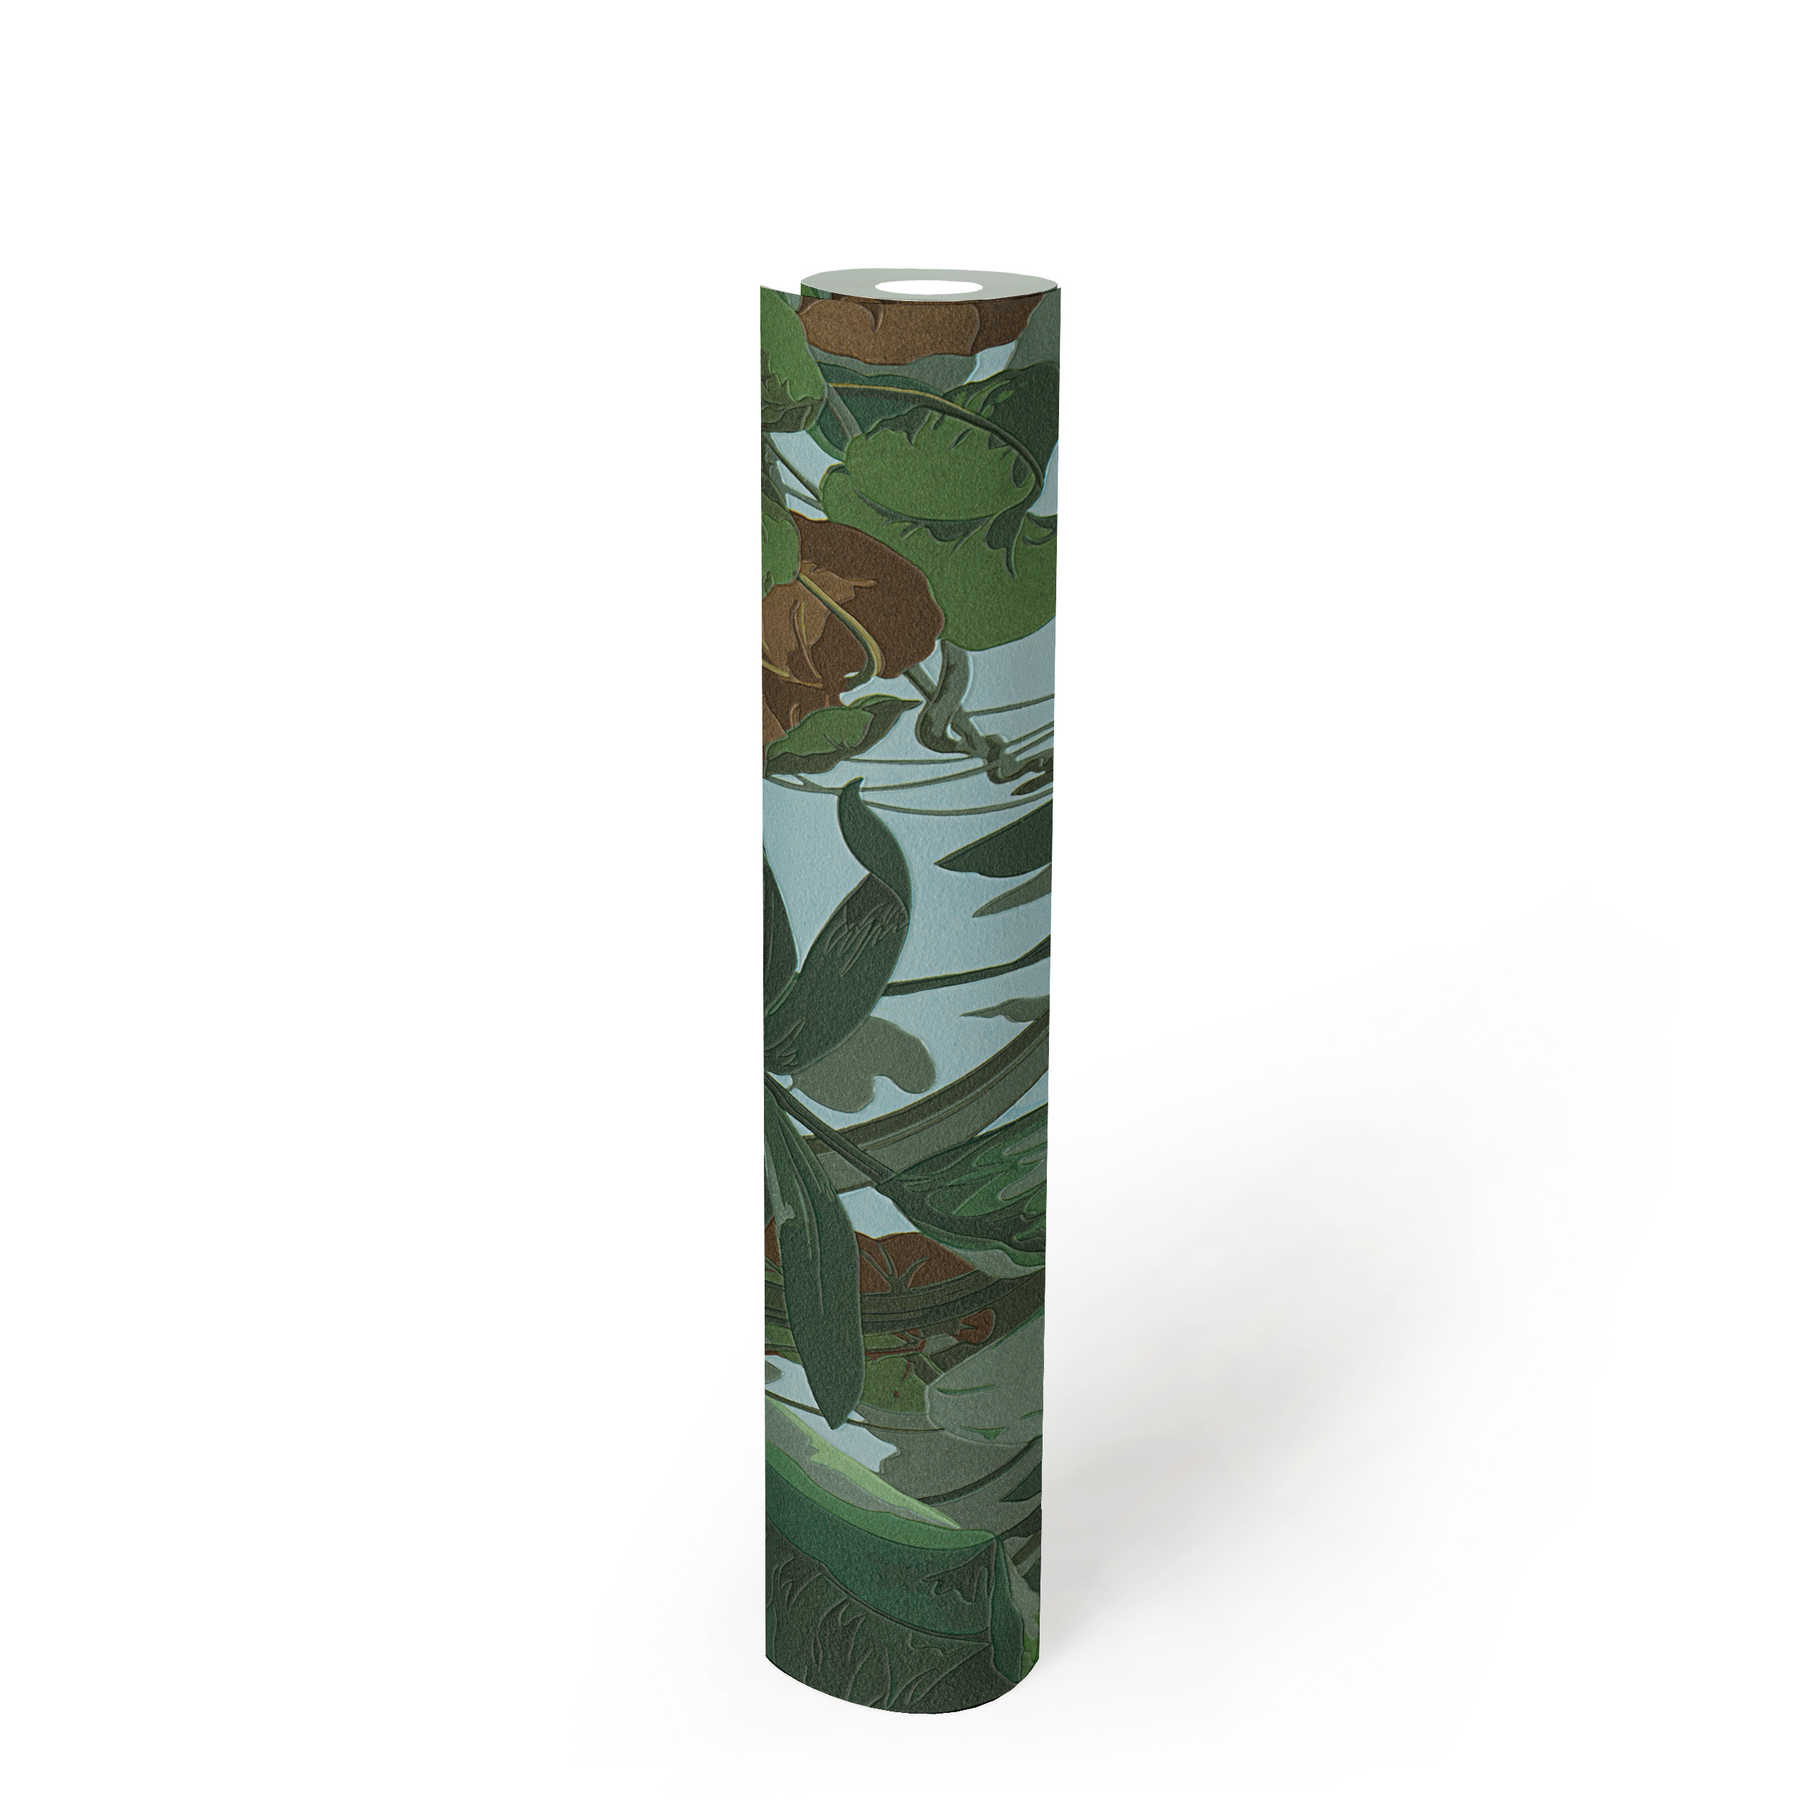             Papier peint jungle avec forêt de feuilles & fourrés verts - vert, marron
        